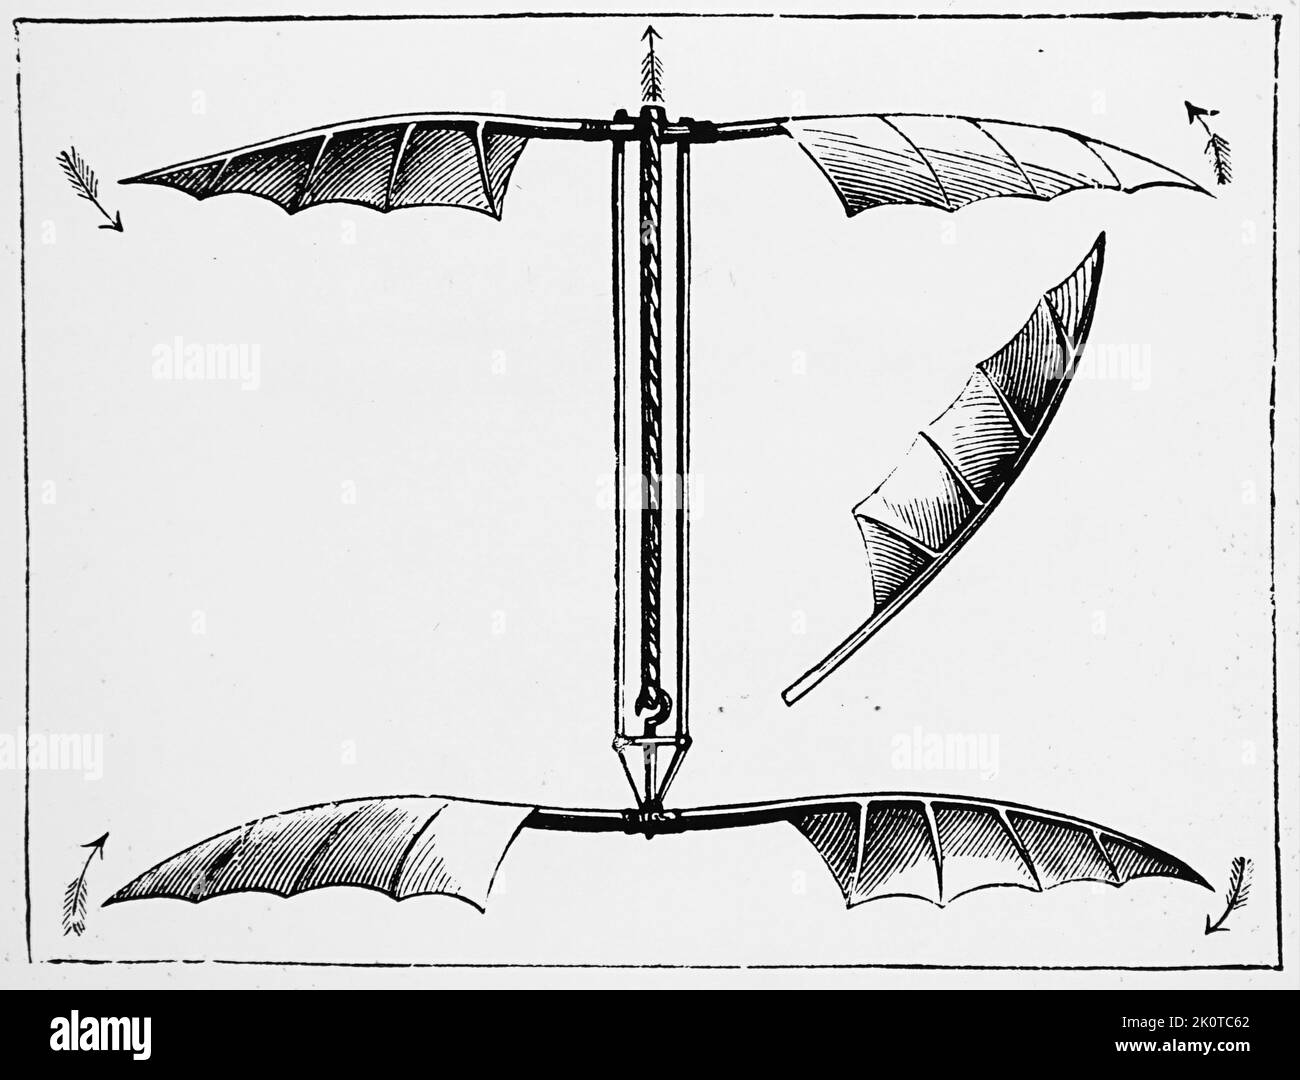 Hélicoptère d'Alphonse Pénaud, conduit par des bandes de caoutchouc torsadées. Alphonse Pénaud (1850-1880), concepteur et ingénieur de l'aviation française. Daté du 19th siècle Banque D'Images